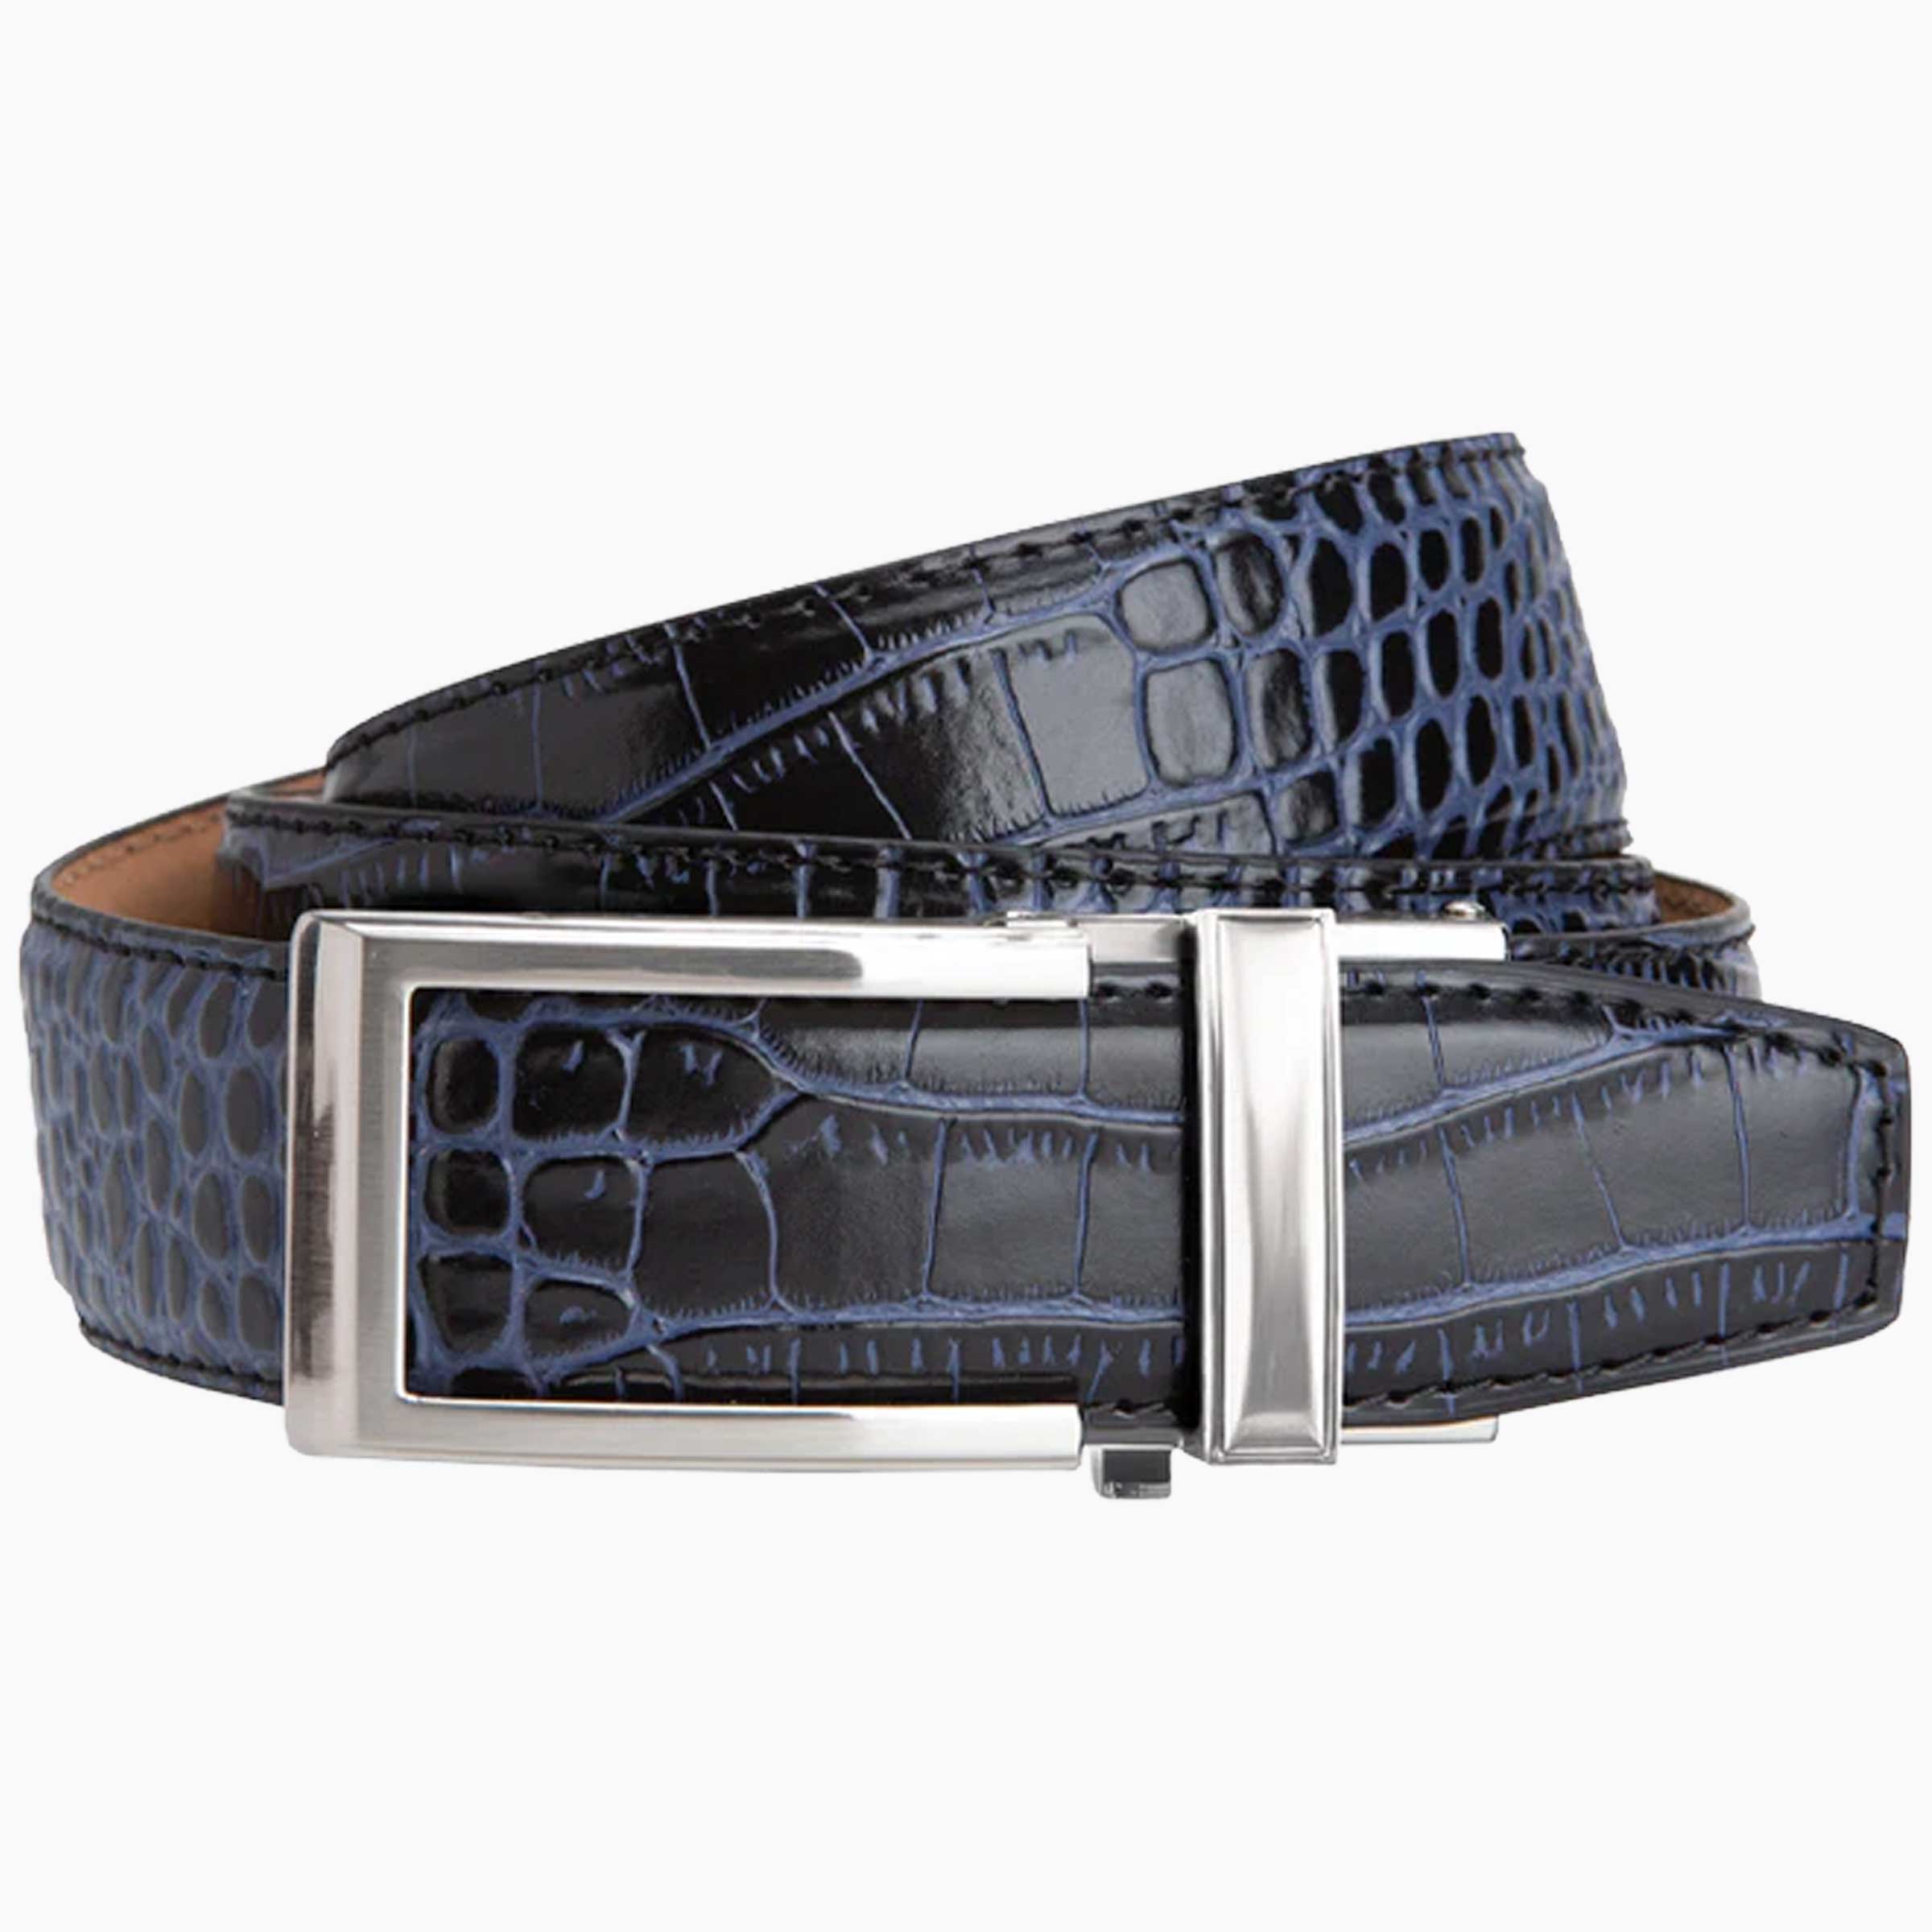 Cayman Black & Blue V2, 1 3/8" Strap, Belt